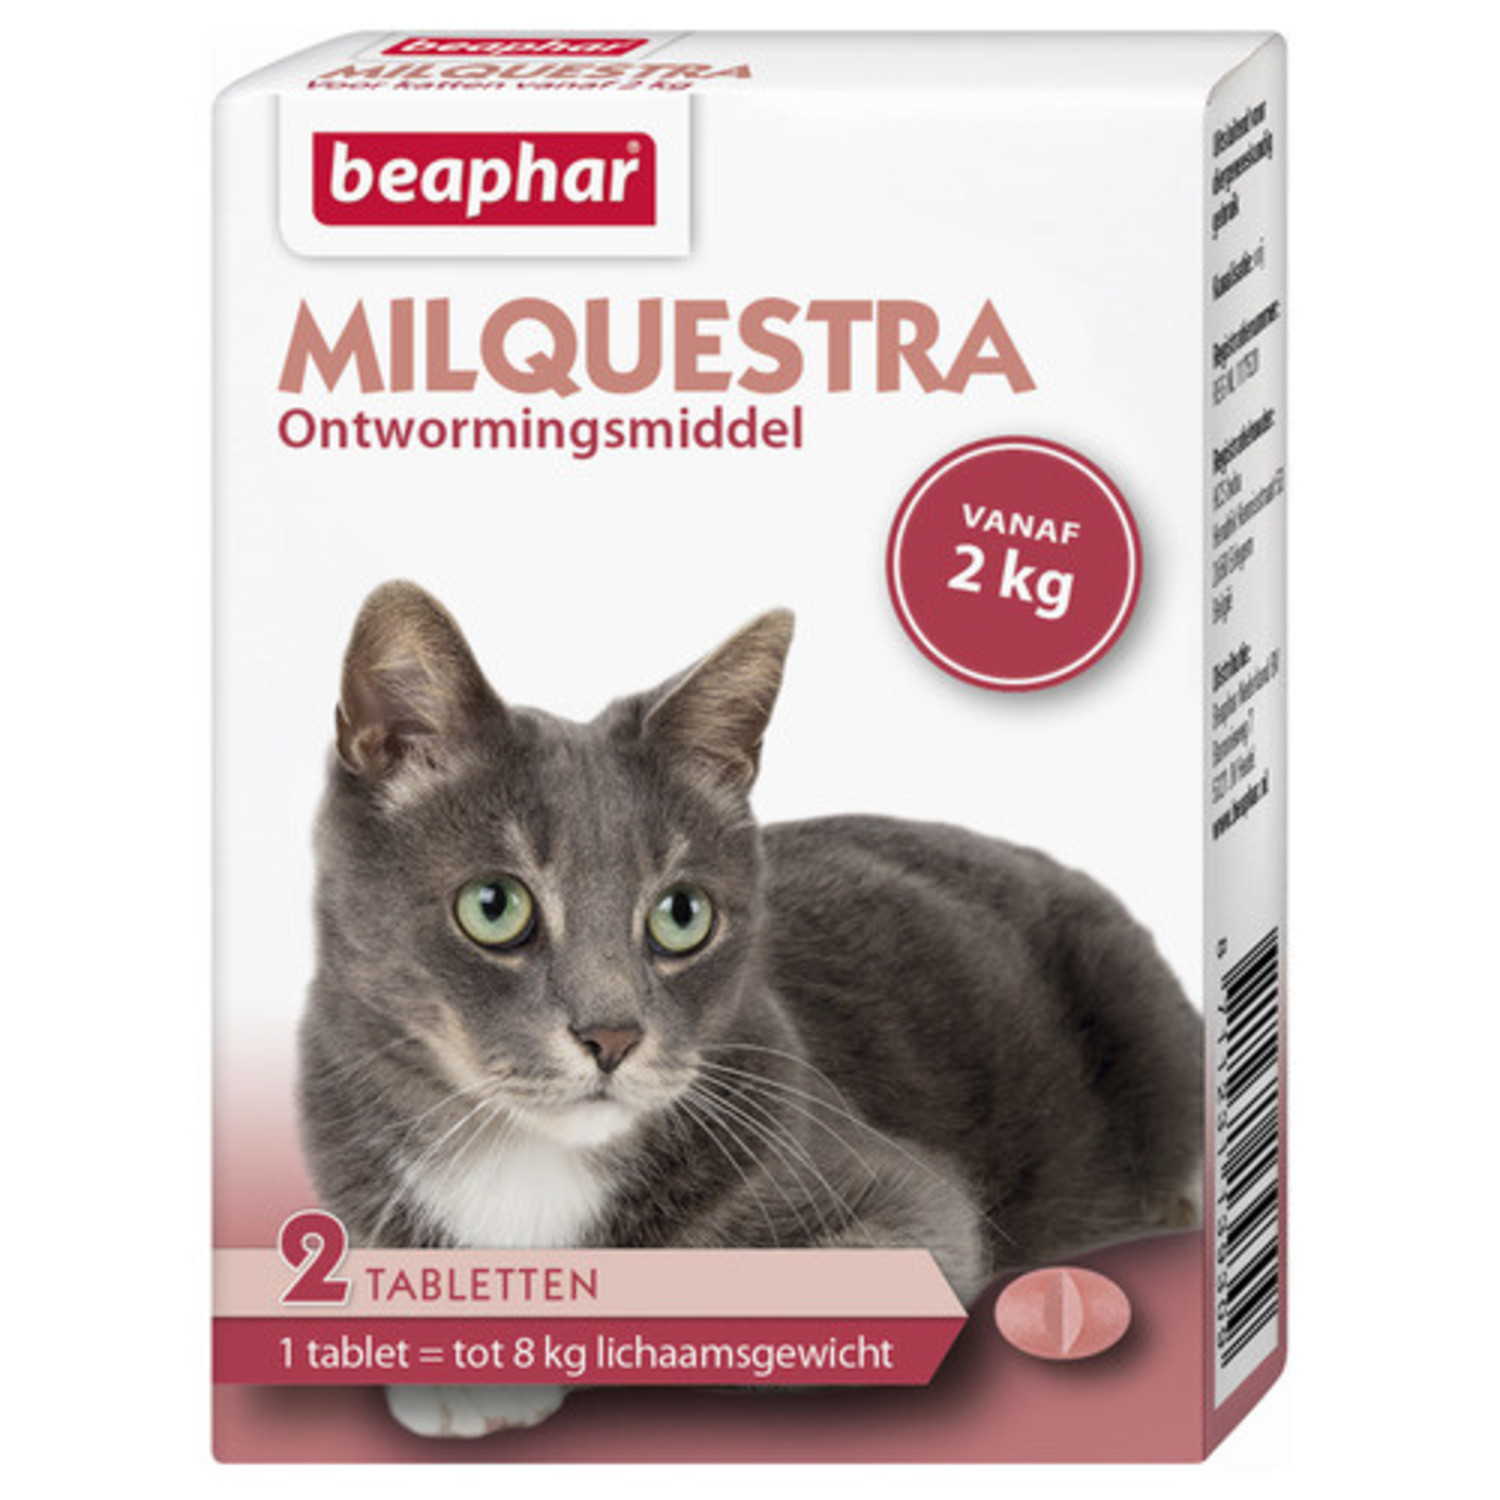 Hectare Wiskundig Luchten Beaphar Milquestra Milquestra ontwormingsmiddel kat - Agridiscounter